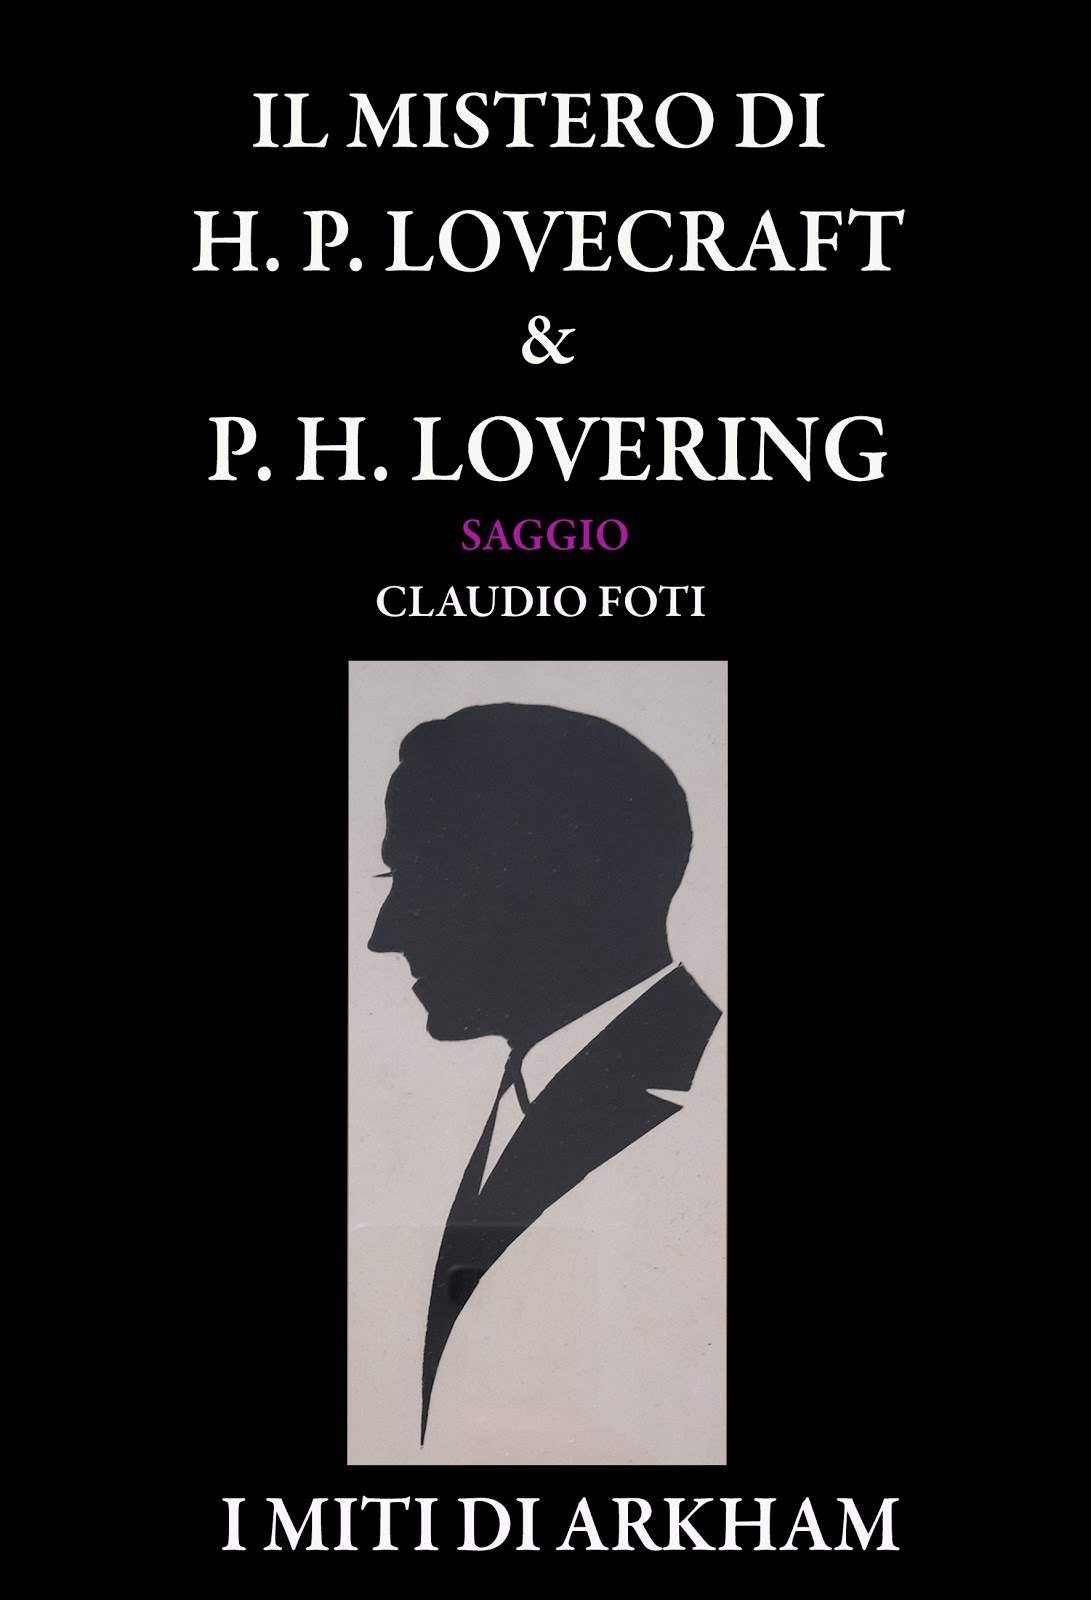 IL MISTERO DI H.P. LOVECRAFT & P.H. LOVERING